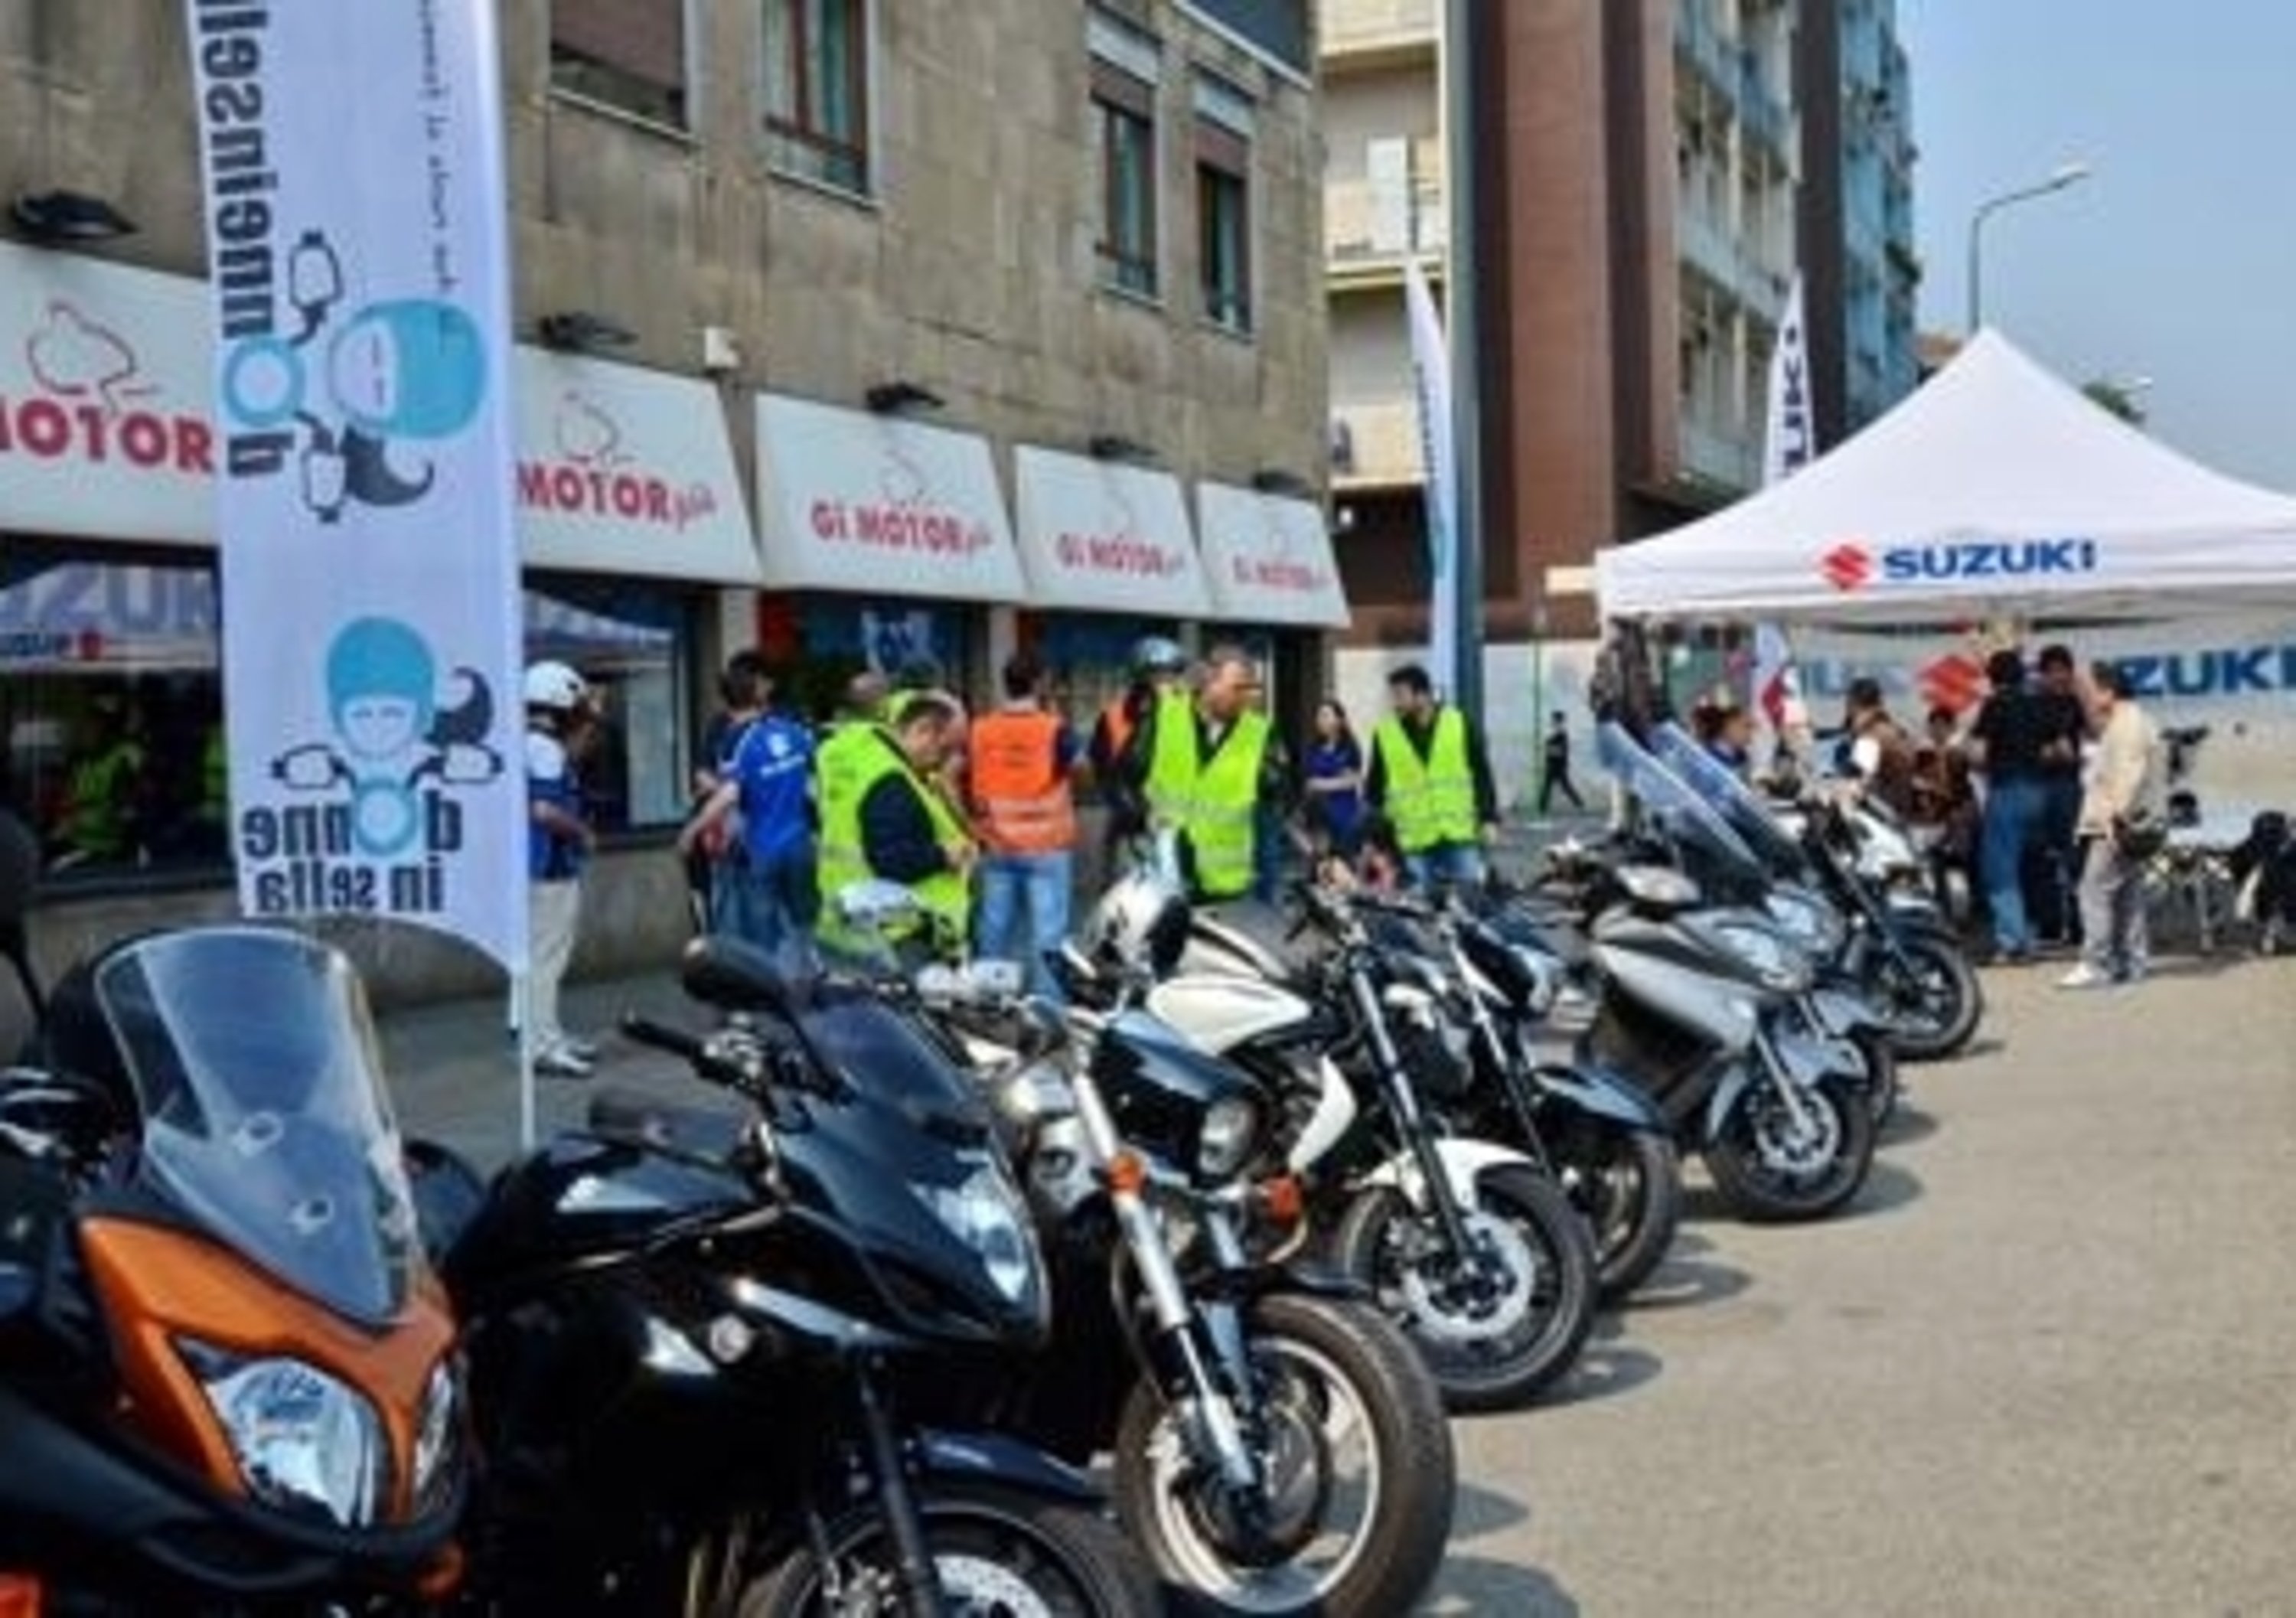 Suzuki Demo Ride Tour 2013 in Lombardia e Piemonte